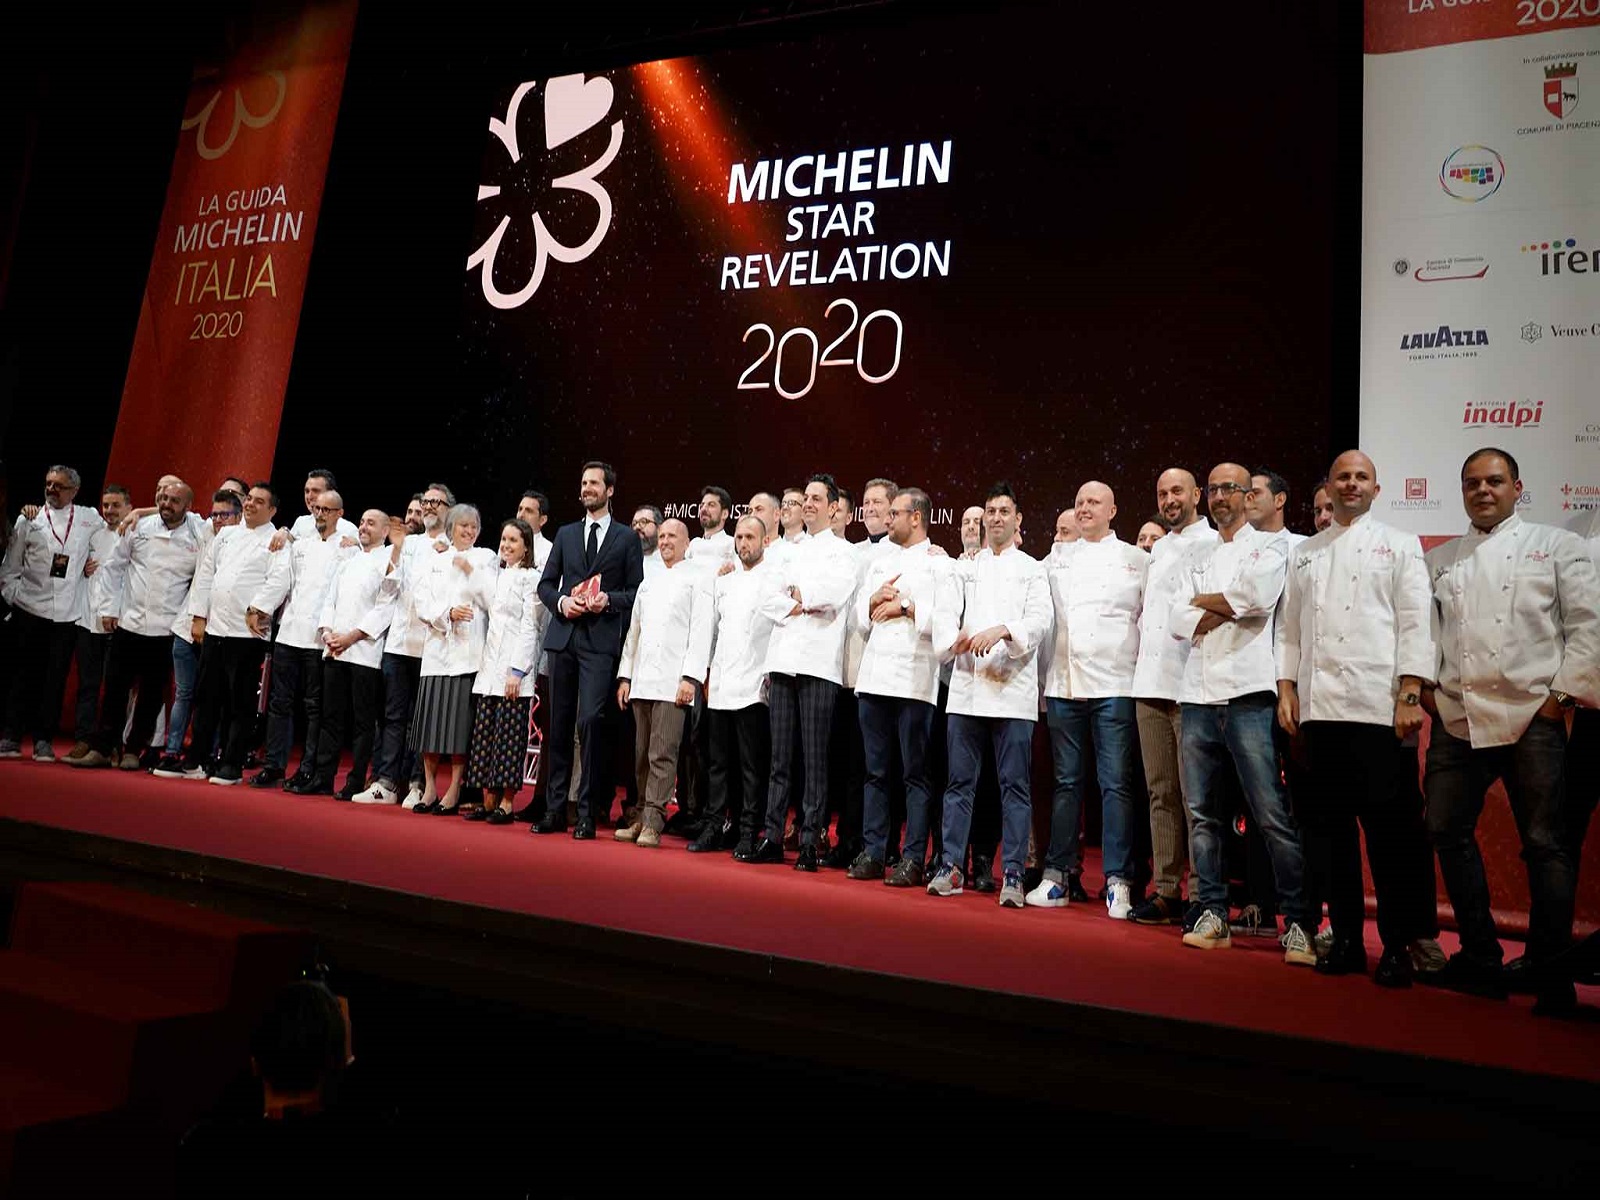 Guida Michelin 2020: i ristoranti premiati tra conferme e new entry